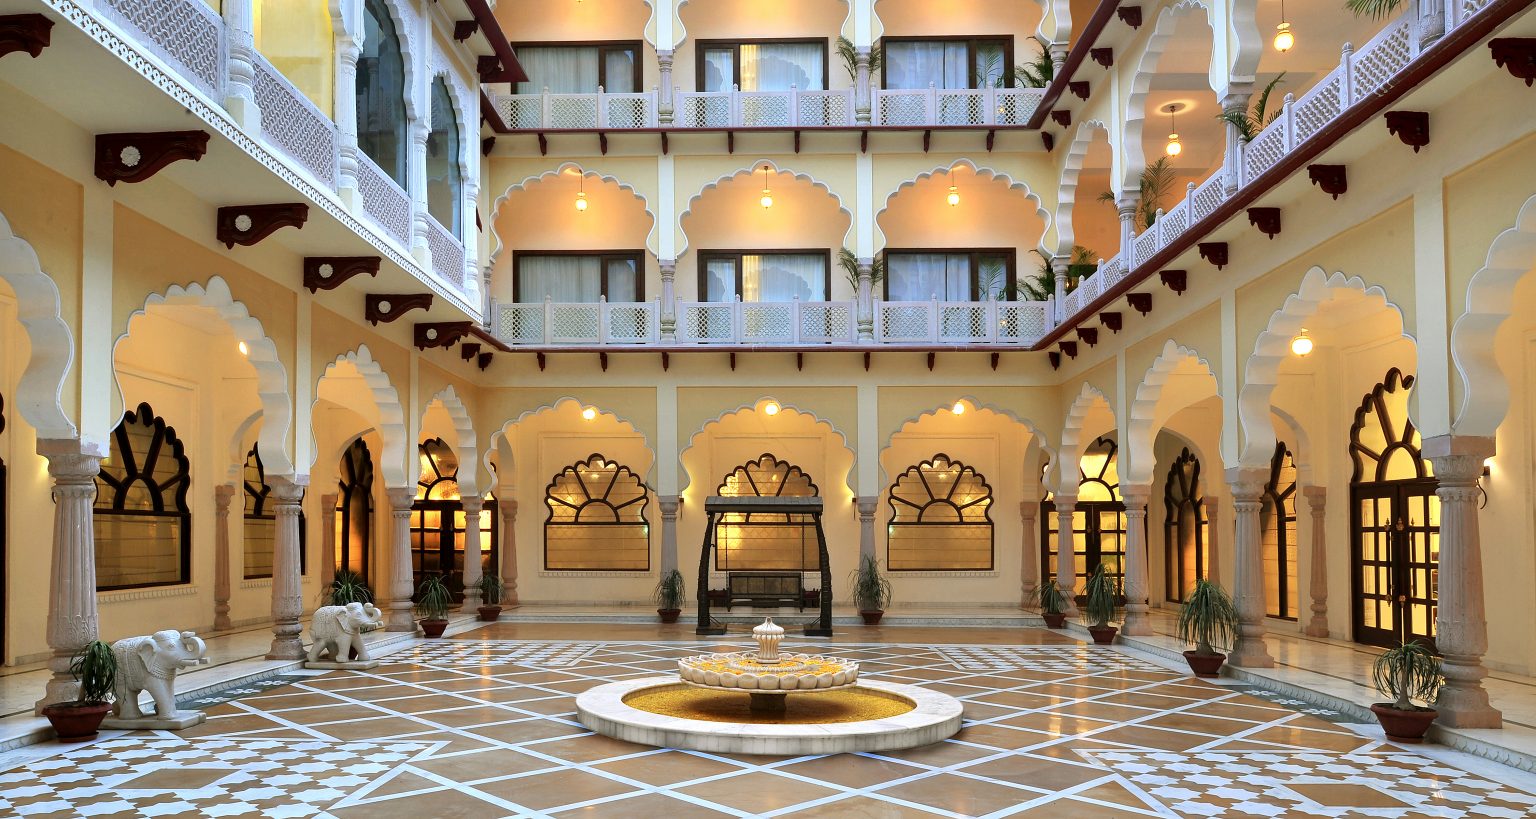 Central Courtyard on Upper Ground Floor Noor Mahal